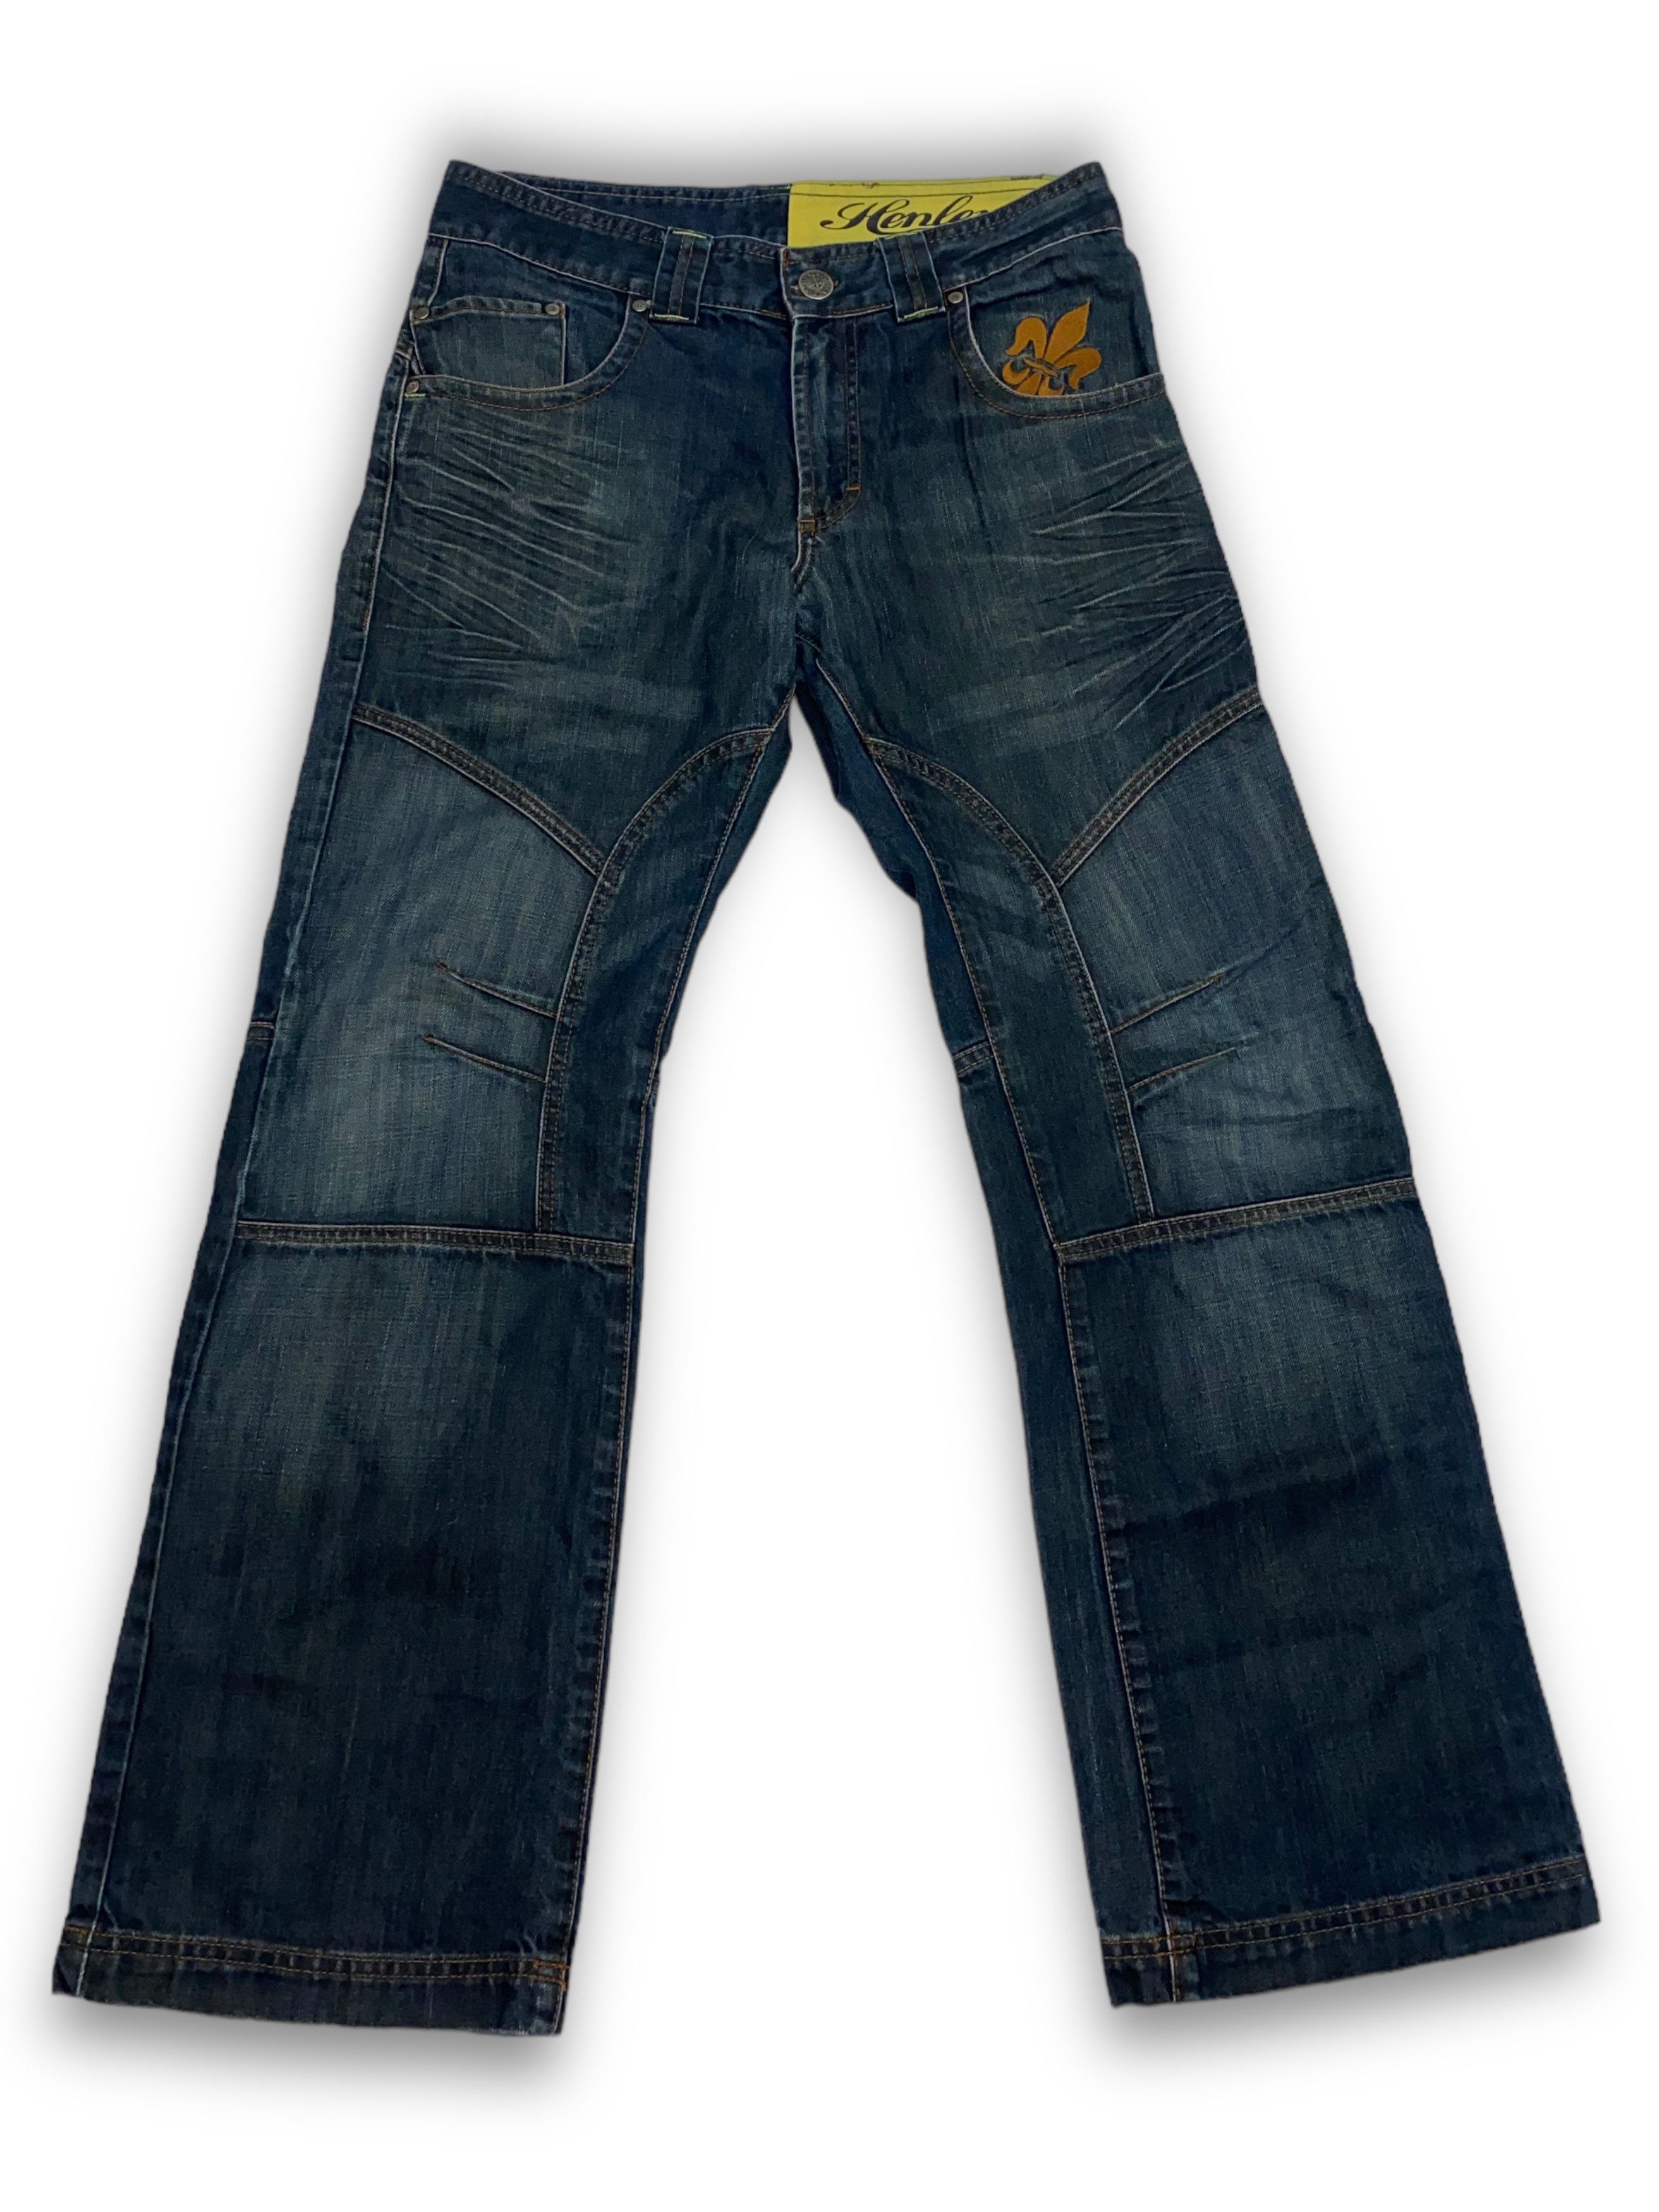 Avant Garde 90s Henleys Jeanswear VIntage Deep Blue Y2K Denim Jeans ...